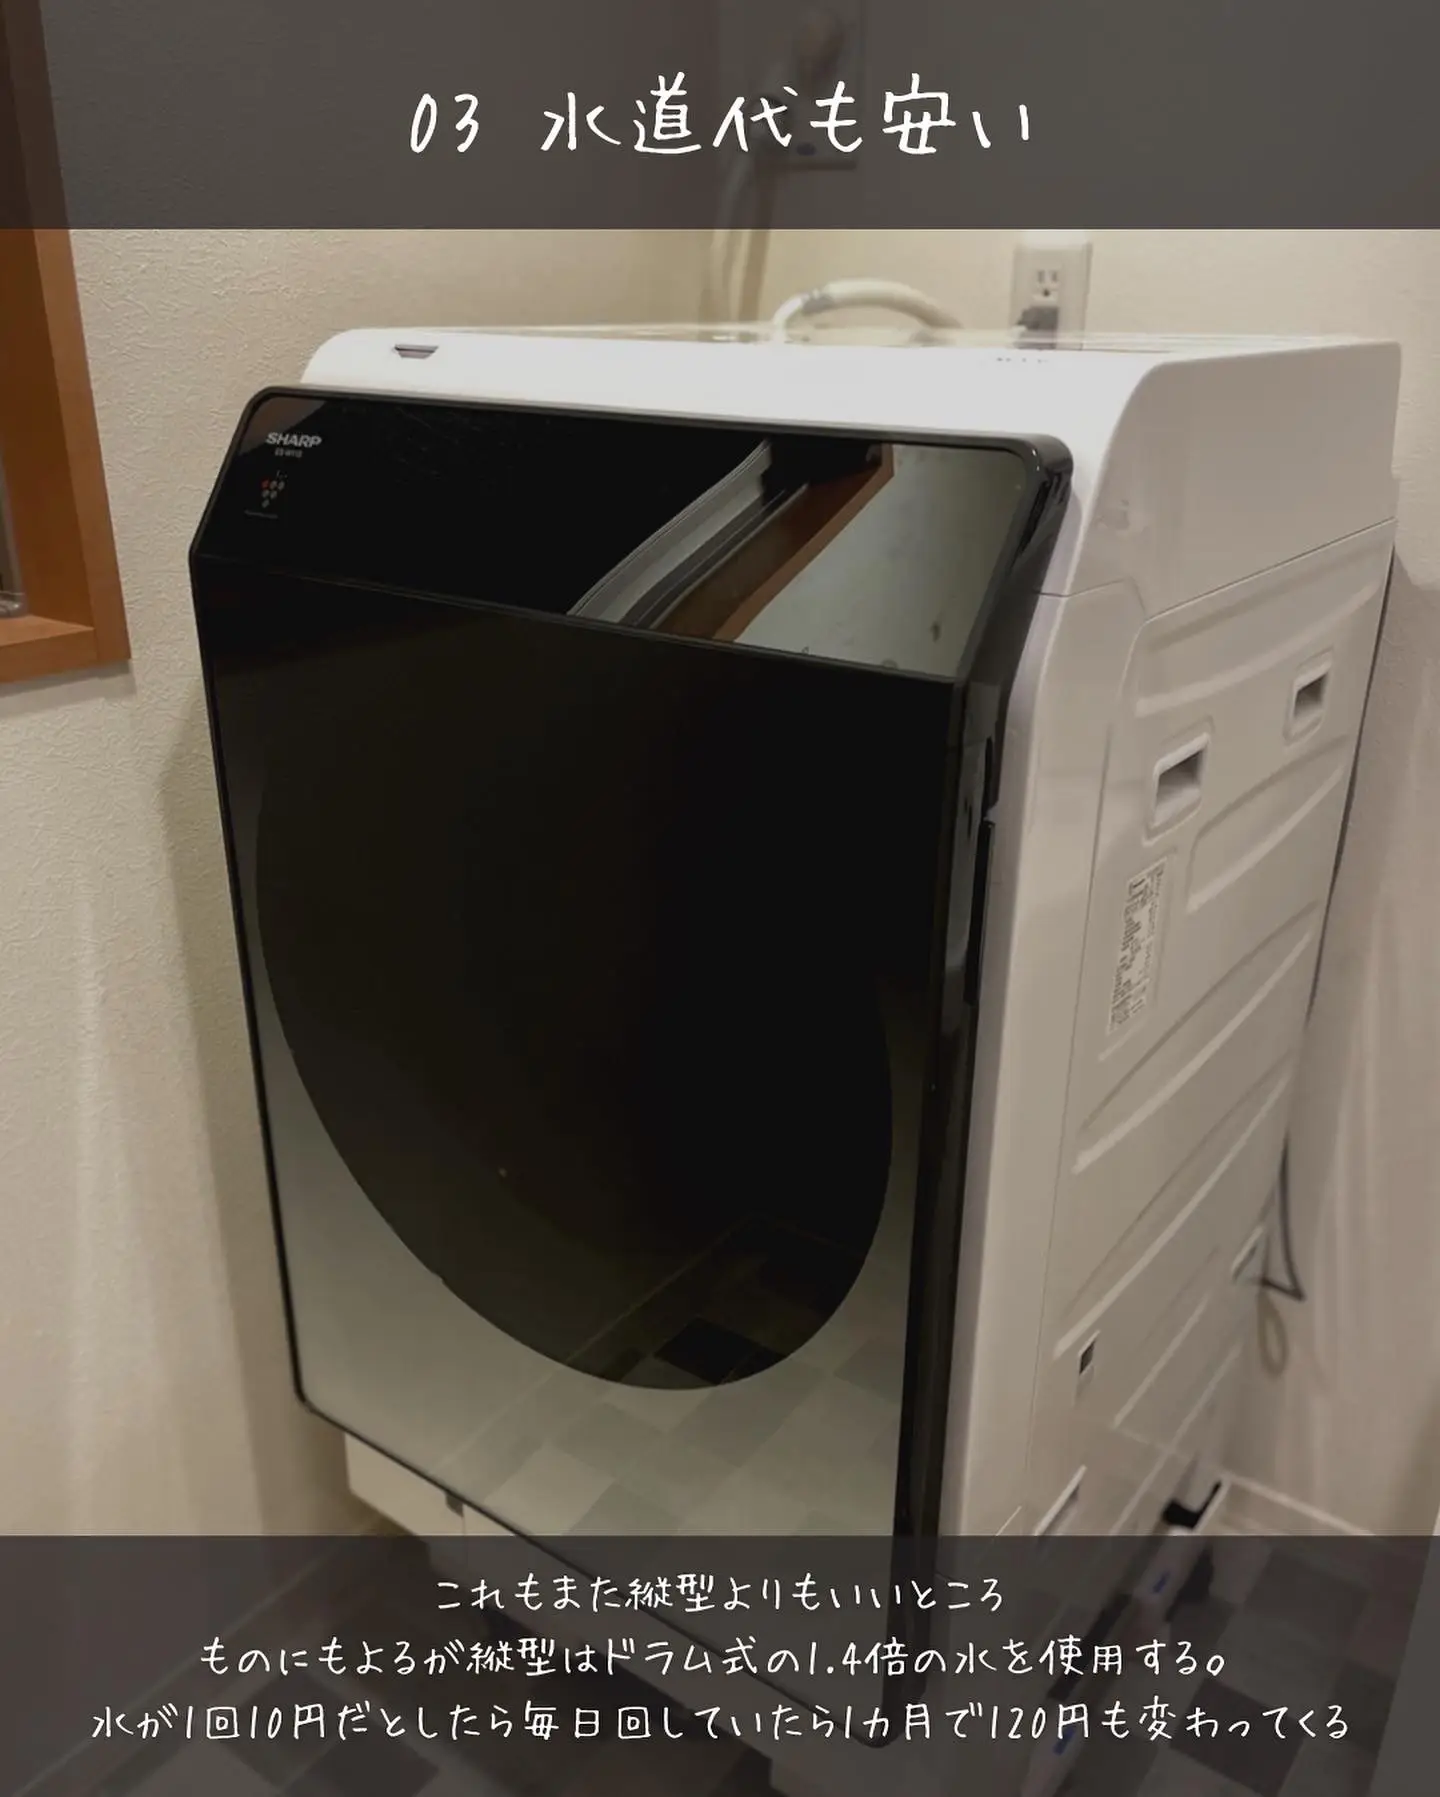 新しいスタイル 159B 超高年式 生活家電 大人気 冷蔵庫 洗濯機 電子 